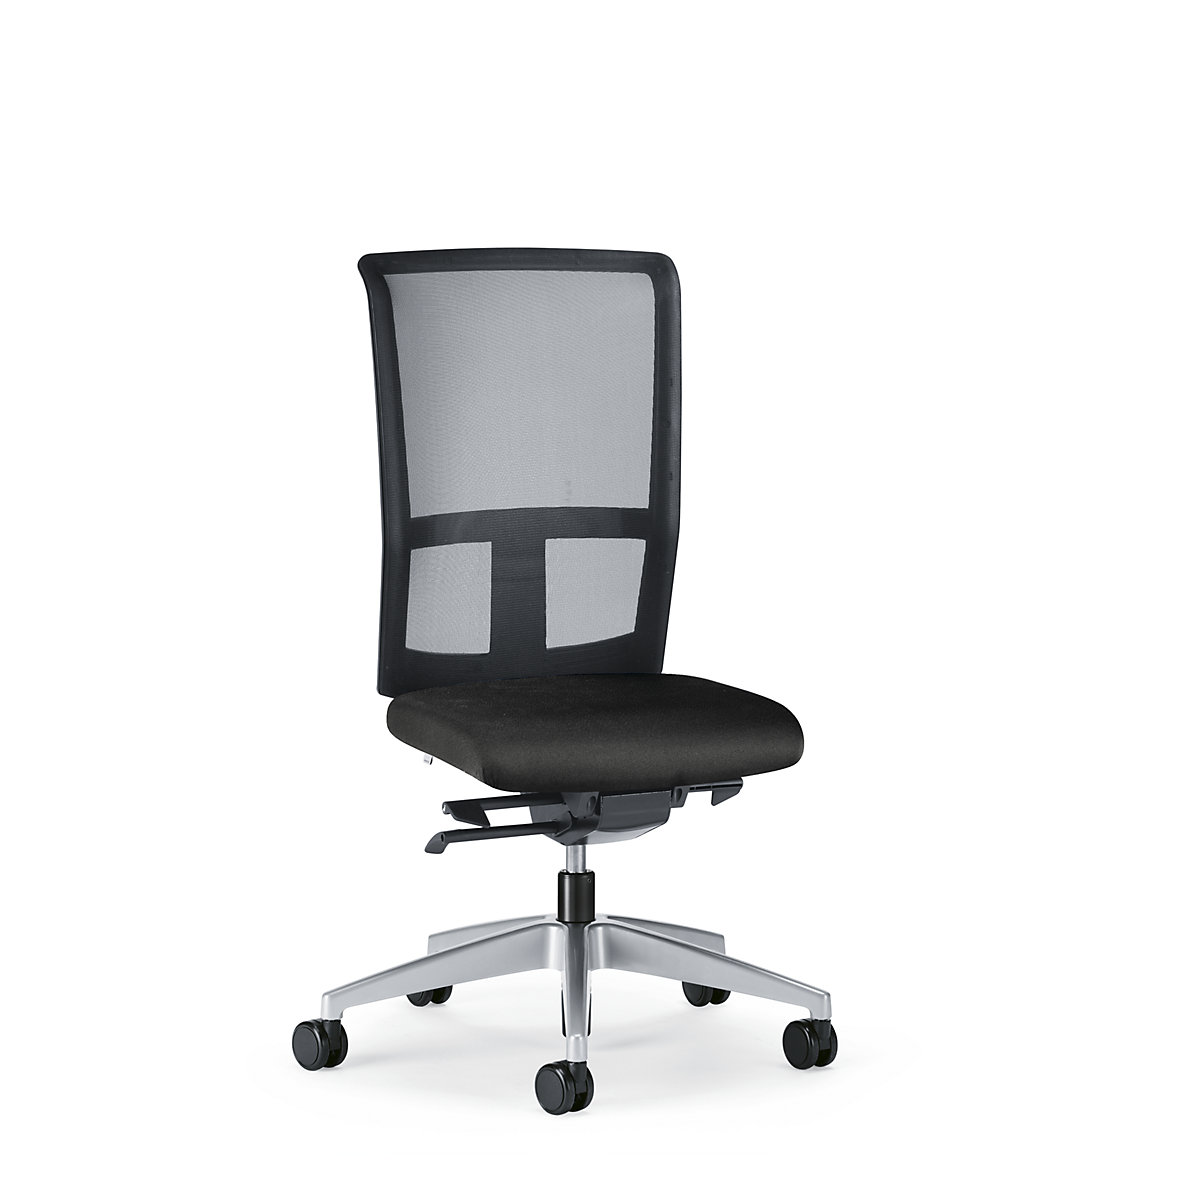 Kancelárska otočná stolička GOAL AIR, výška operadla 545 mm – interstuhl, podstavec briliantová strieborná, s mäkkými kolieskami, grafitovo čierna, hĺbka sedadla 410 mm-2